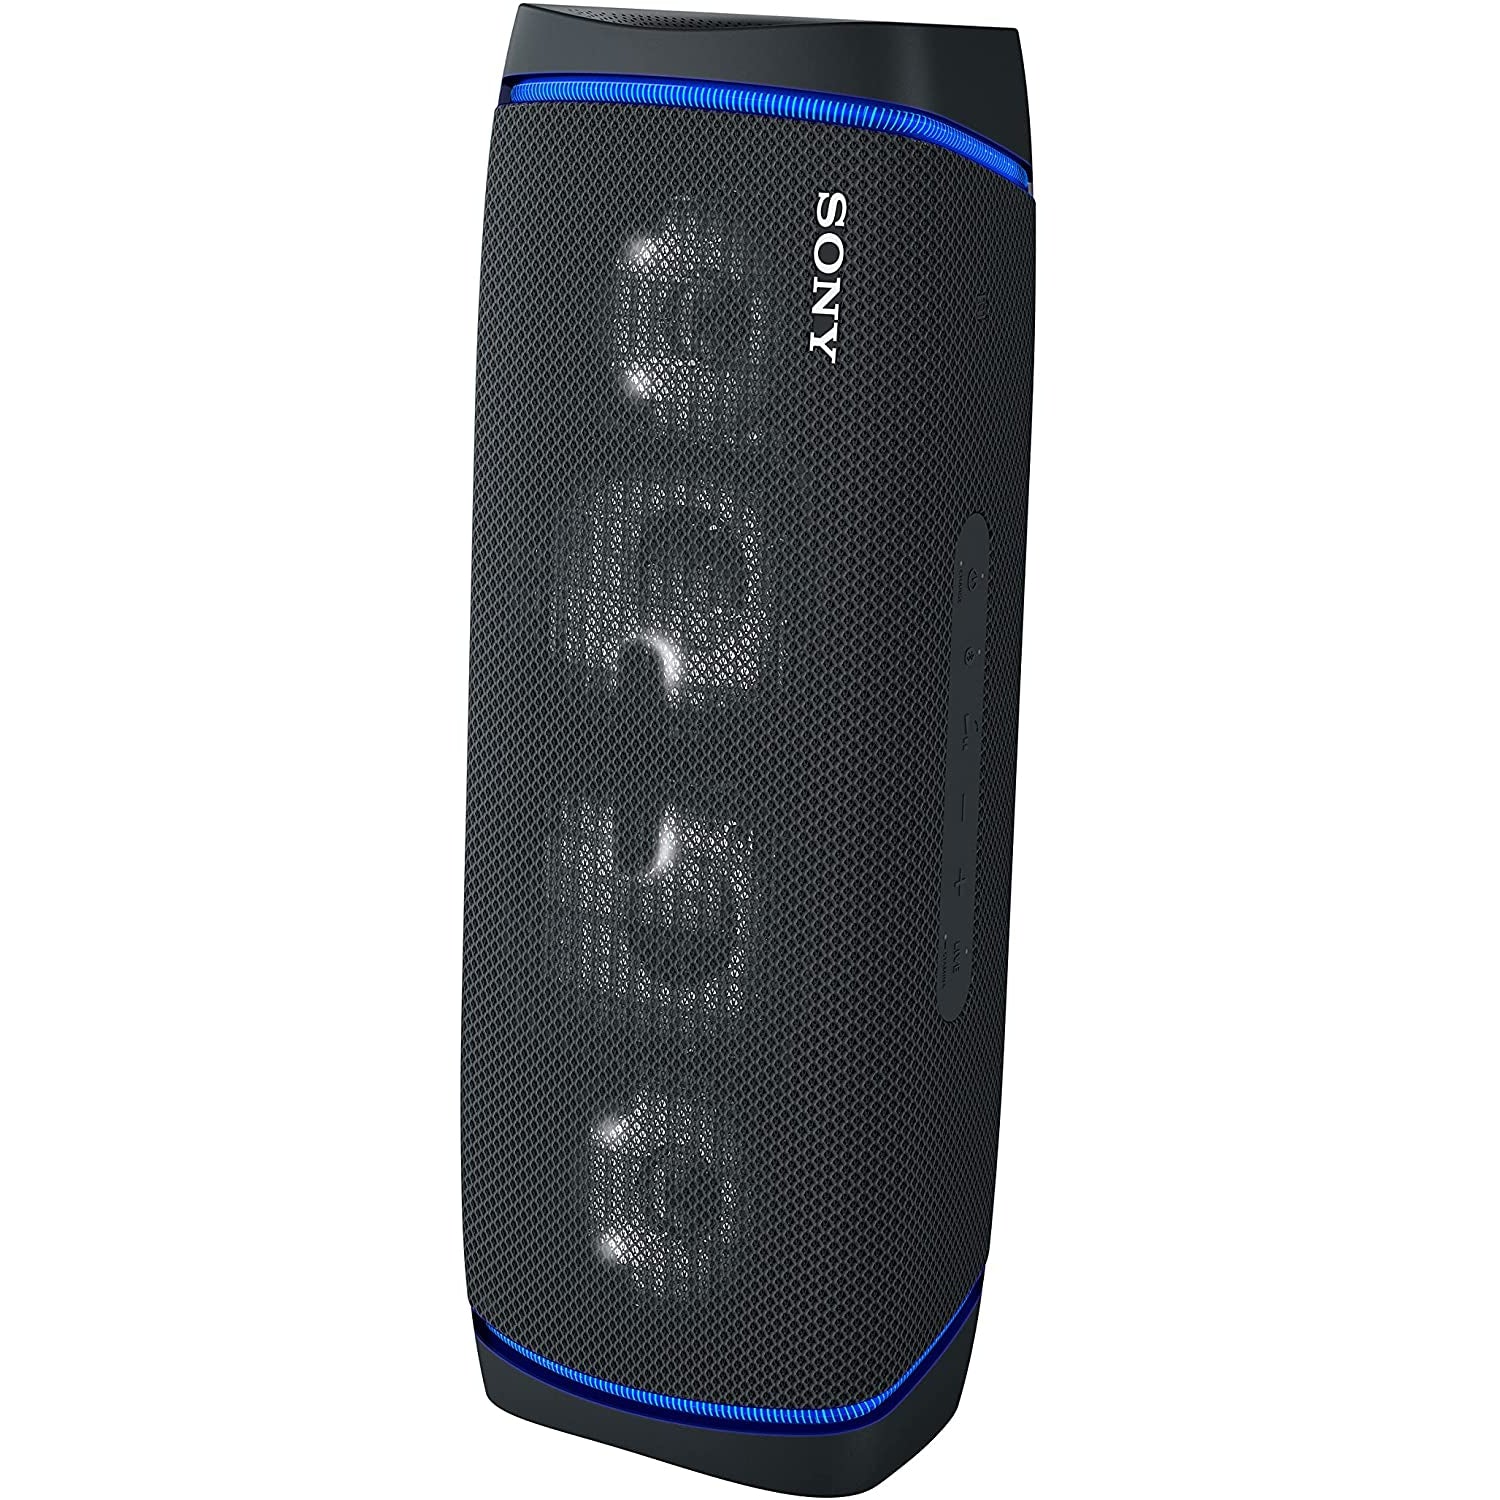 Sony SRS-XB43 Waterproof Wireless Bluetooth Speaker